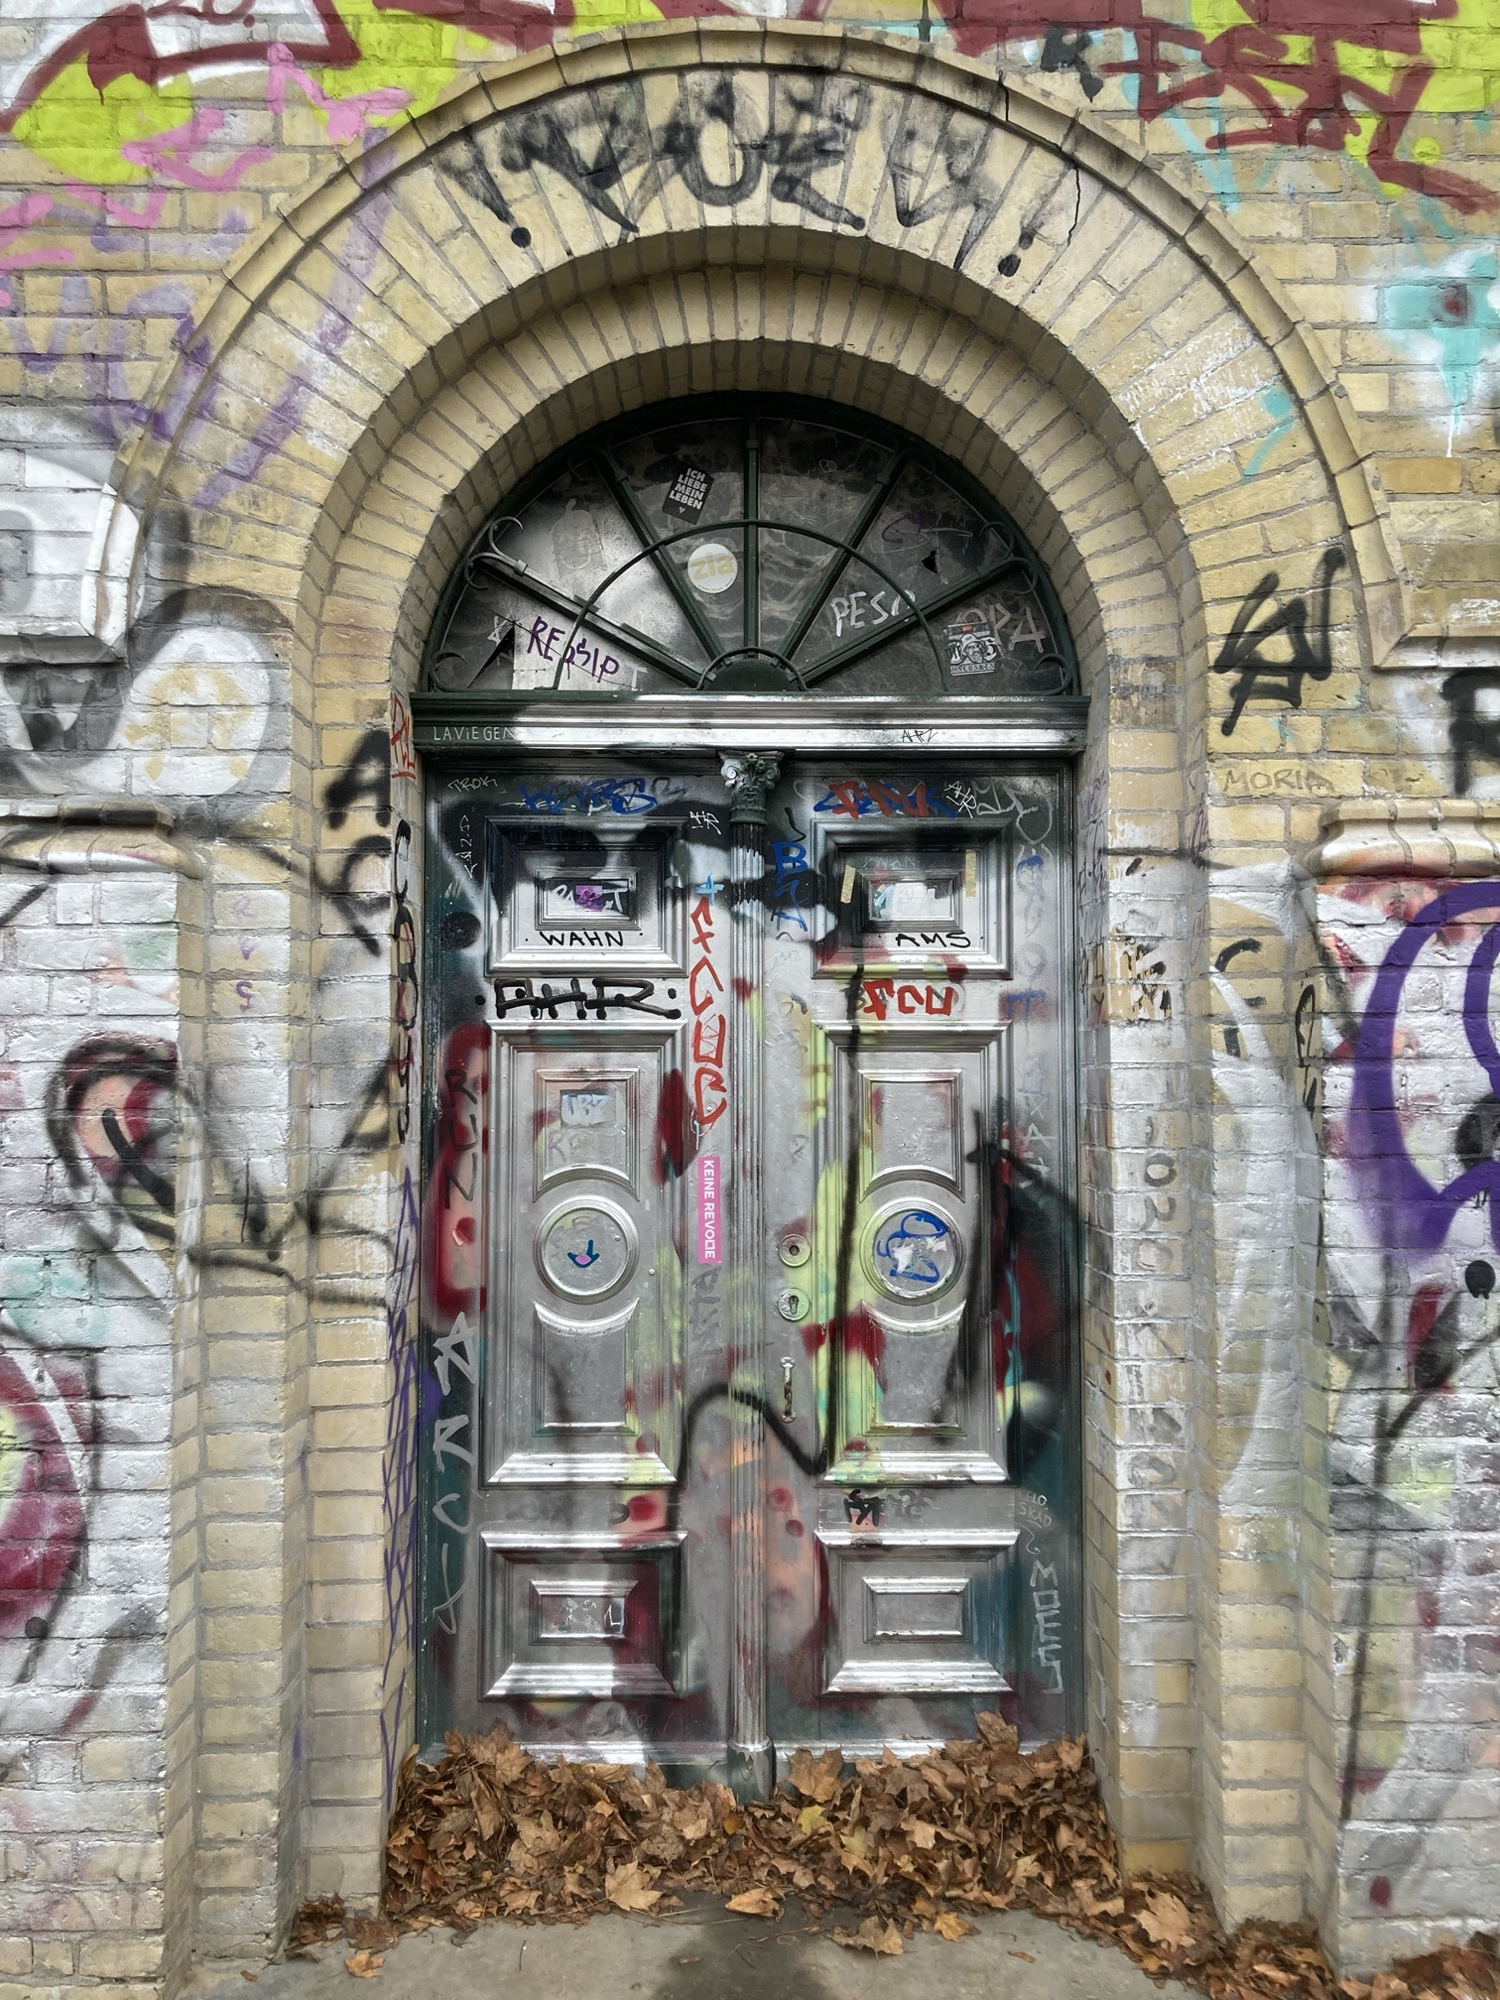 Türbereich des schmäleren Wasserturms auf dem Hügel, die Tür beinhaltet oben einen halbkreisförmigen Abschluss, der von einem Bogen aus Ziegeln eingefasst ist, sowohl Tür als auch die Wände drumherum sind mit verschiedenfarbigem Graffiti bedeckt, unten vor der Tür liegt eine Schicht Laub